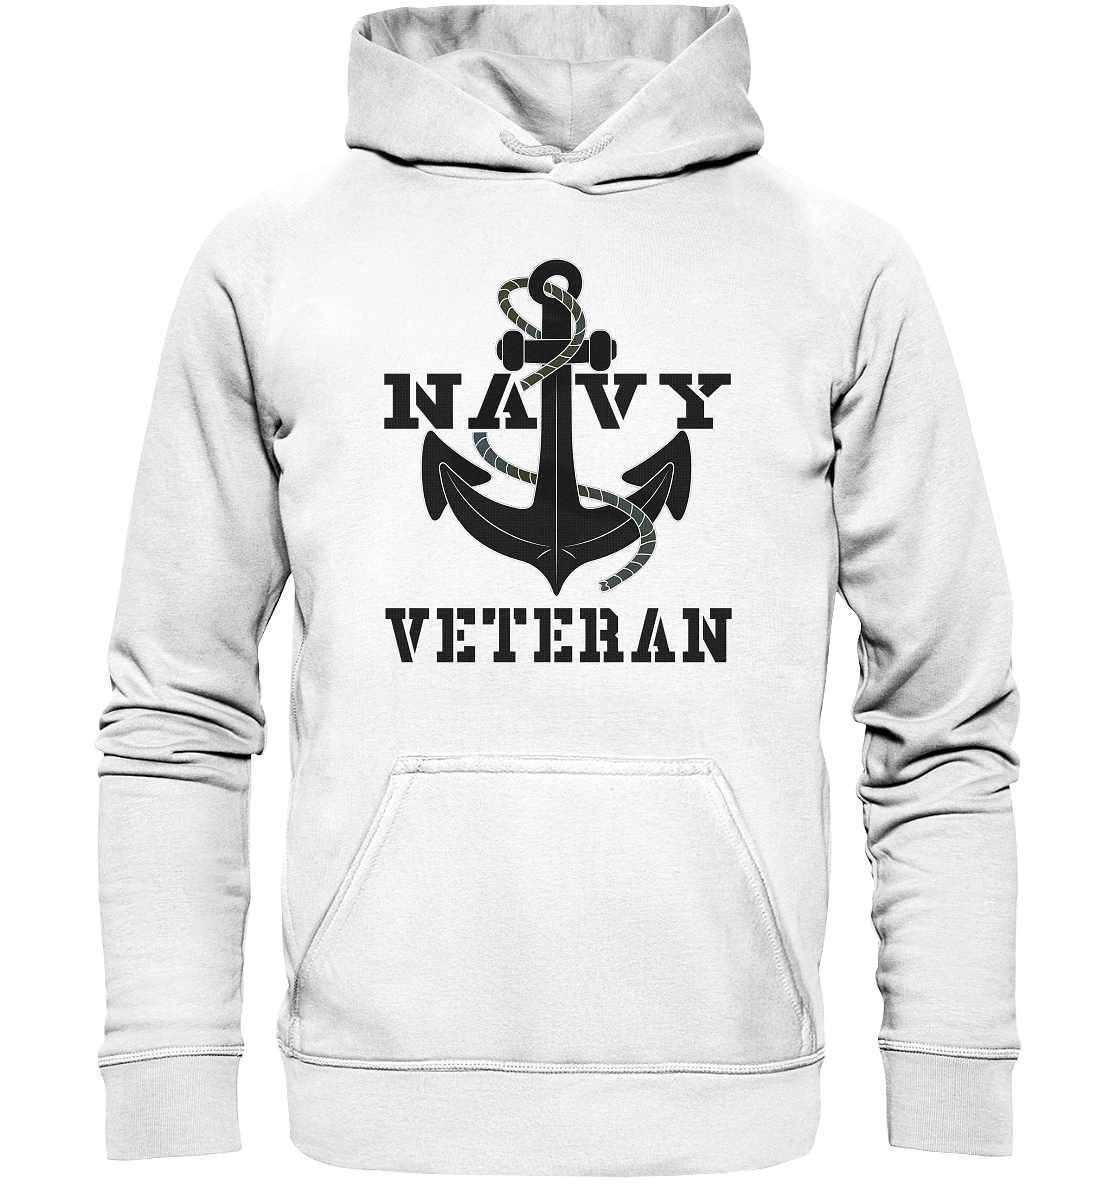 Navy Veteran Anker - Basic Unisex Hoodie